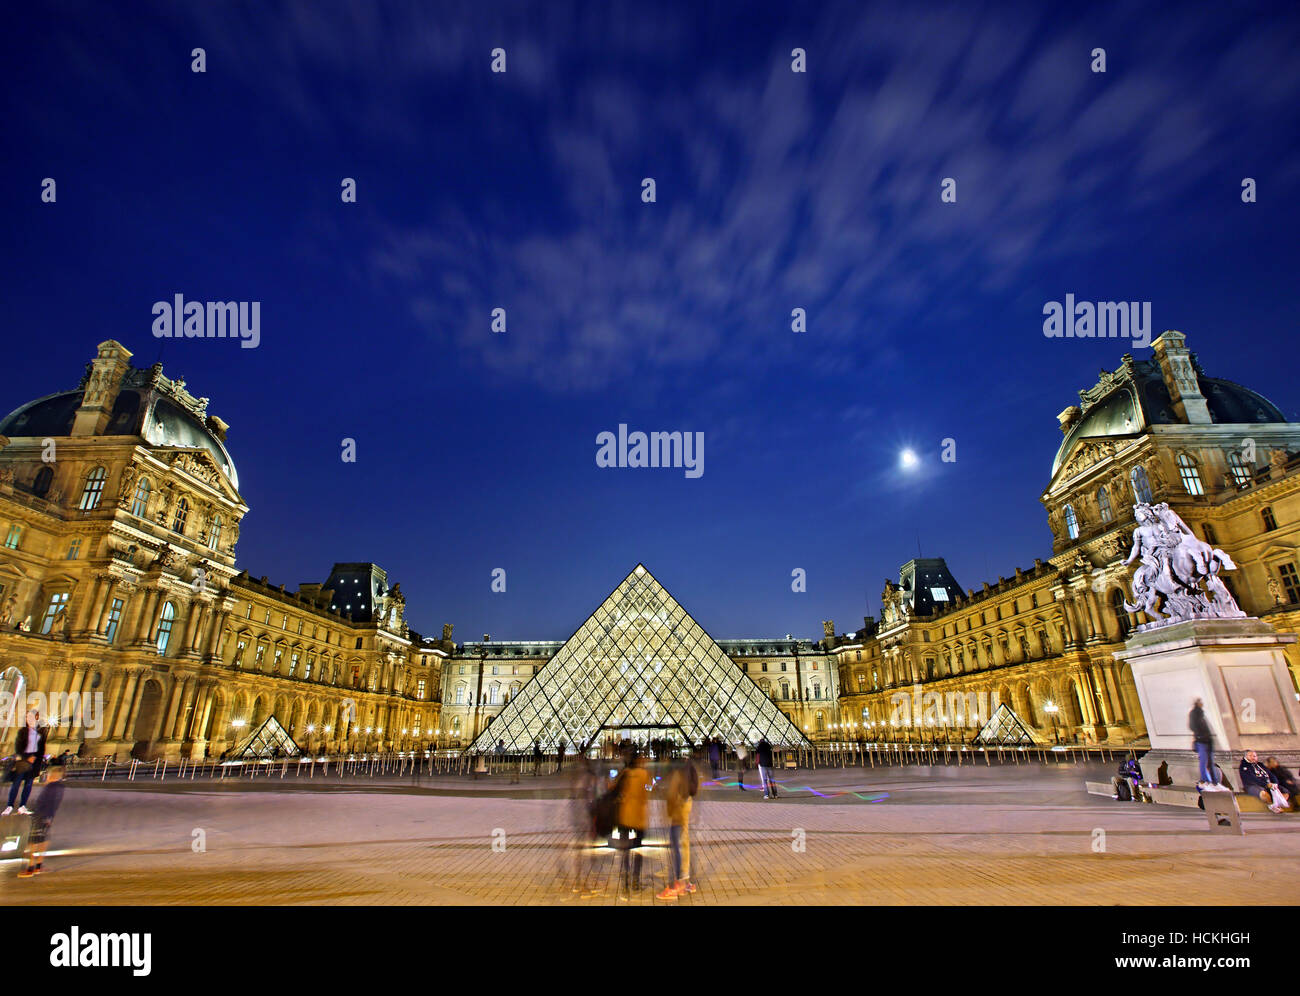 Le Musée du Louvre (Musée du Louvre) et sa pyramide de verre (architecte : I.M. Pei), Paris, France. Banque D'Images